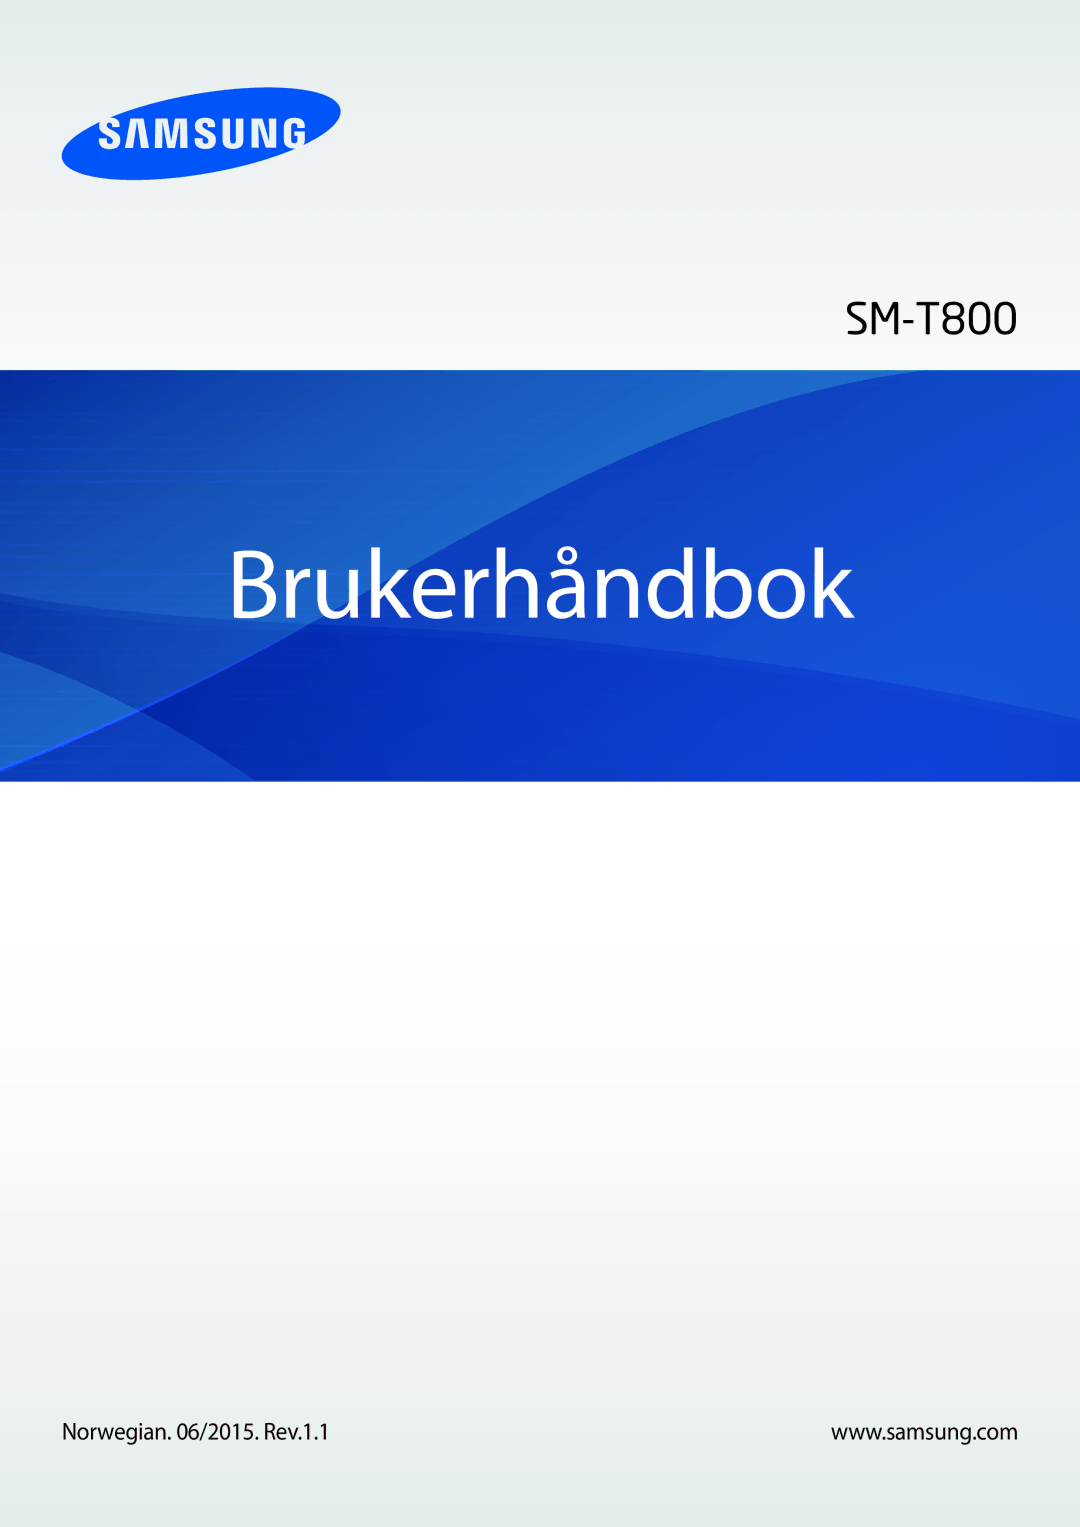 Samsung SM-T800NLSANEE, SM-T800NHAANEE, SM-T800NZWANEE, SM-T800NTSENEE manual Brukerhåndbok, Norwegian /2015. Rev.1.1 